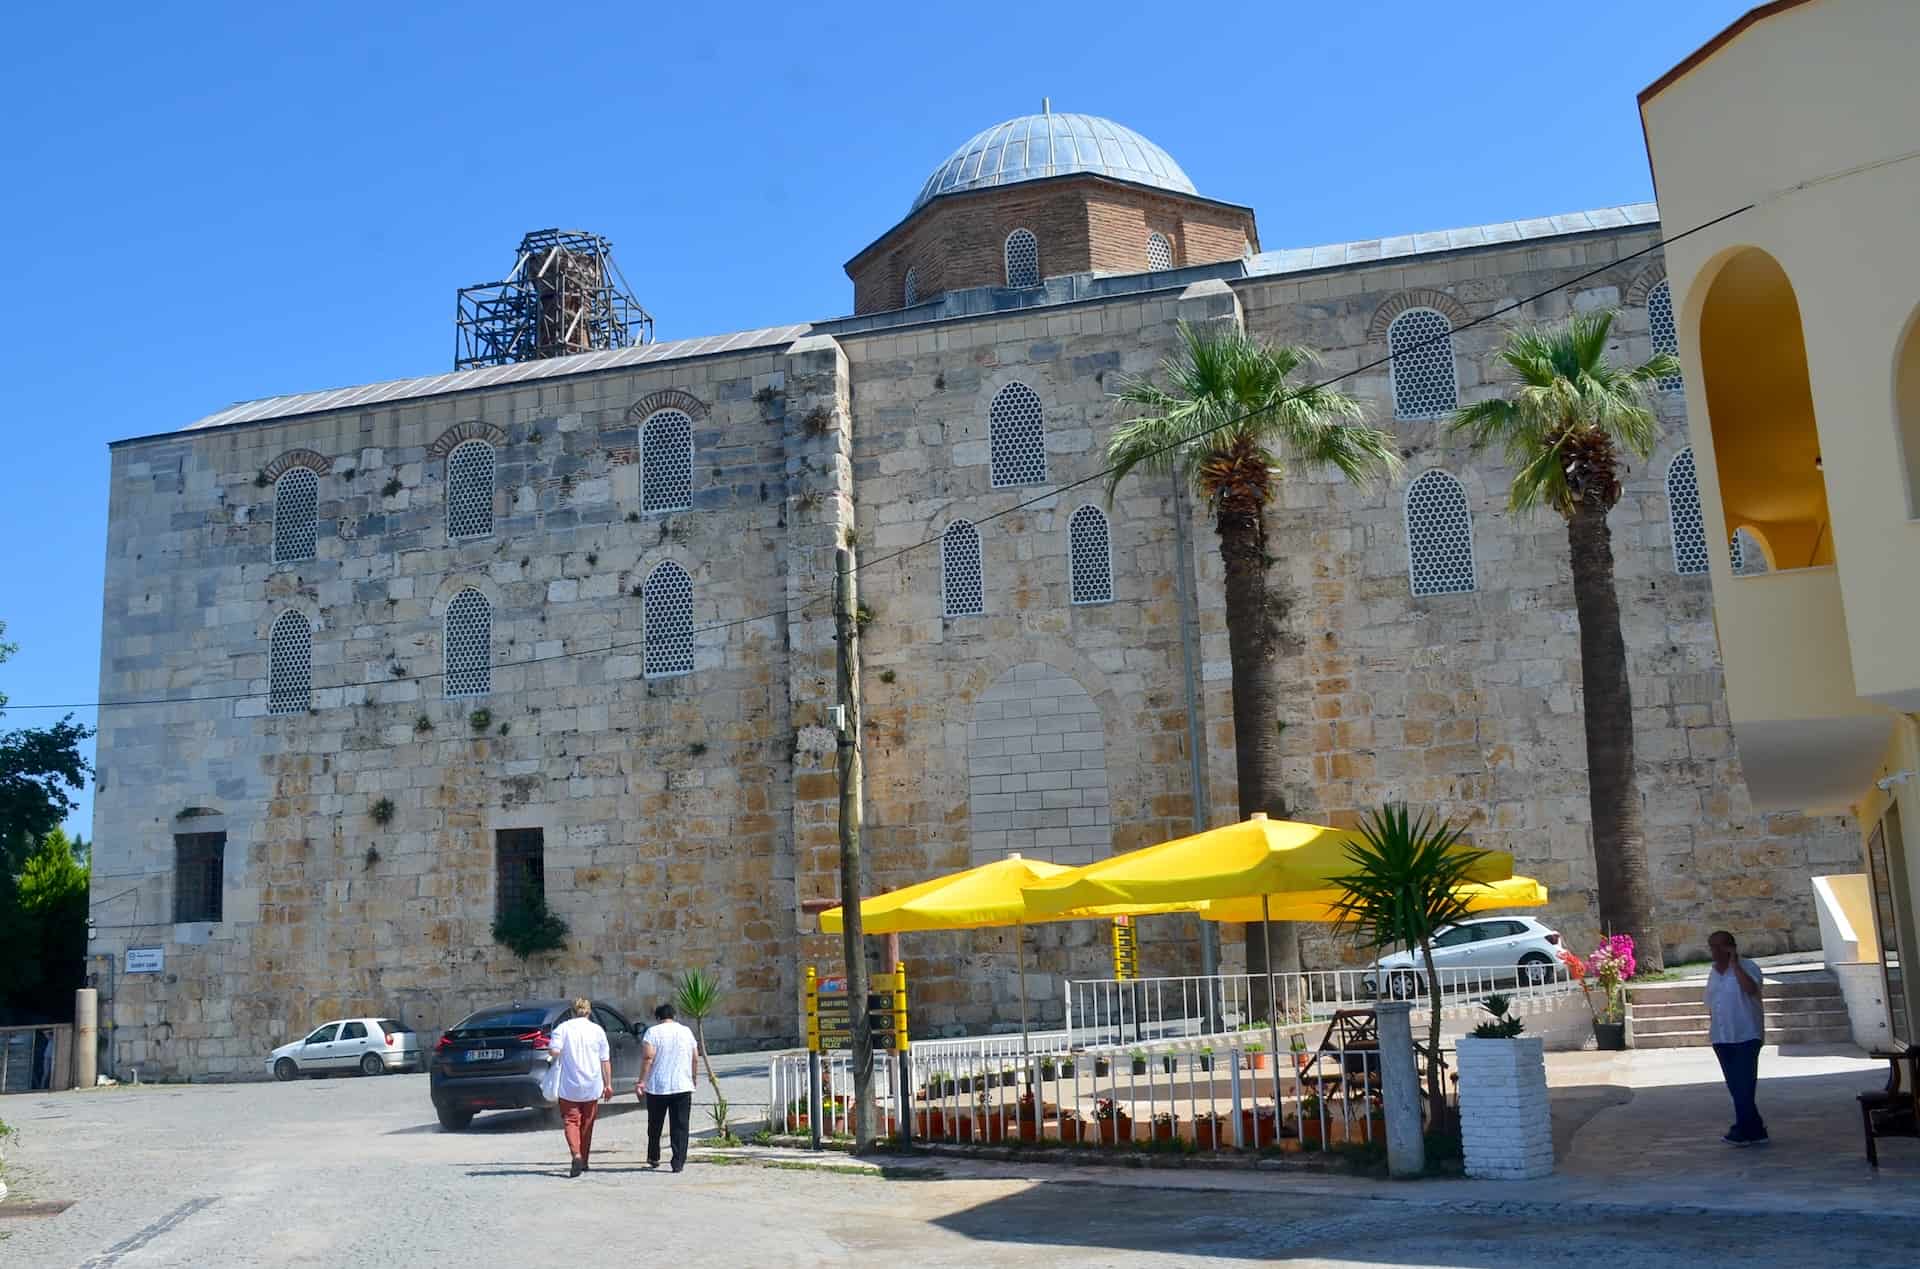 Isa Bey Mosque in Selçuk, Turkey